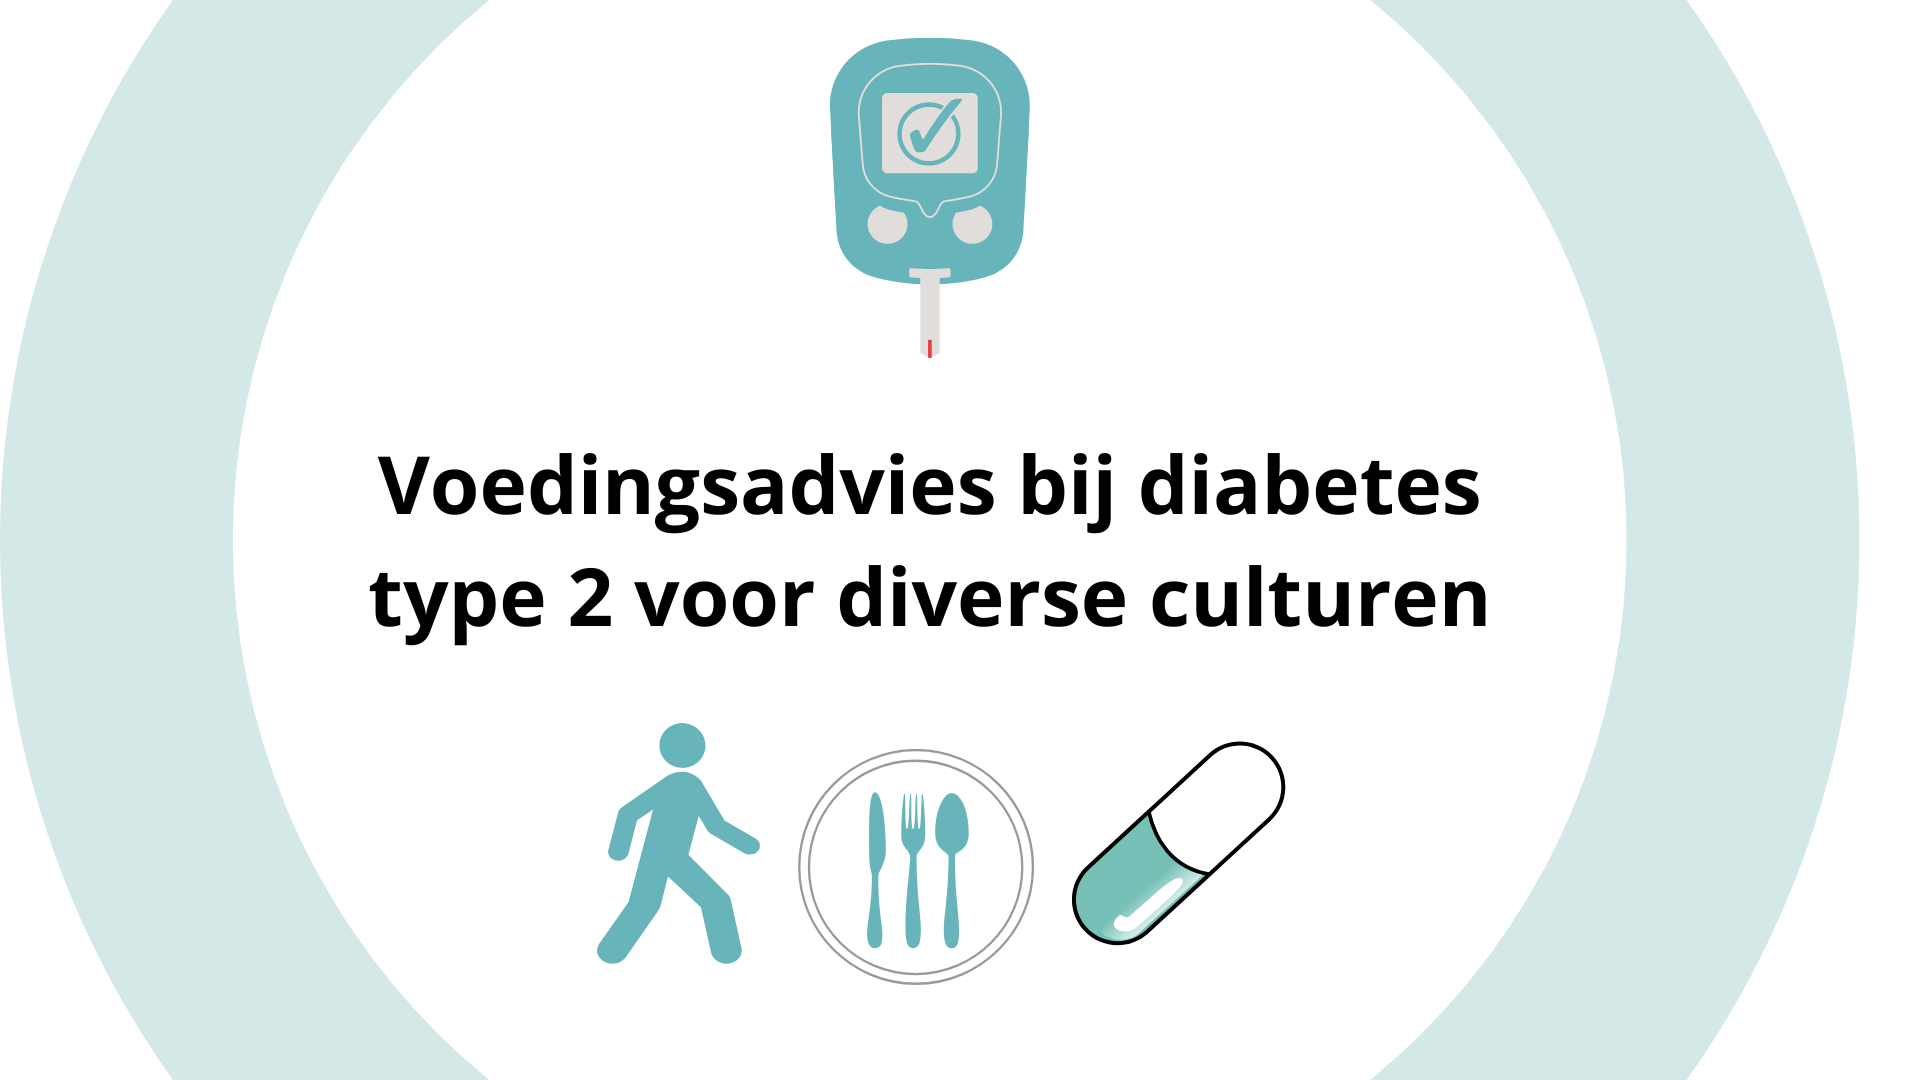 Educatiemap Voedingsadvies bij diabetes type 2 (diverse culturen)